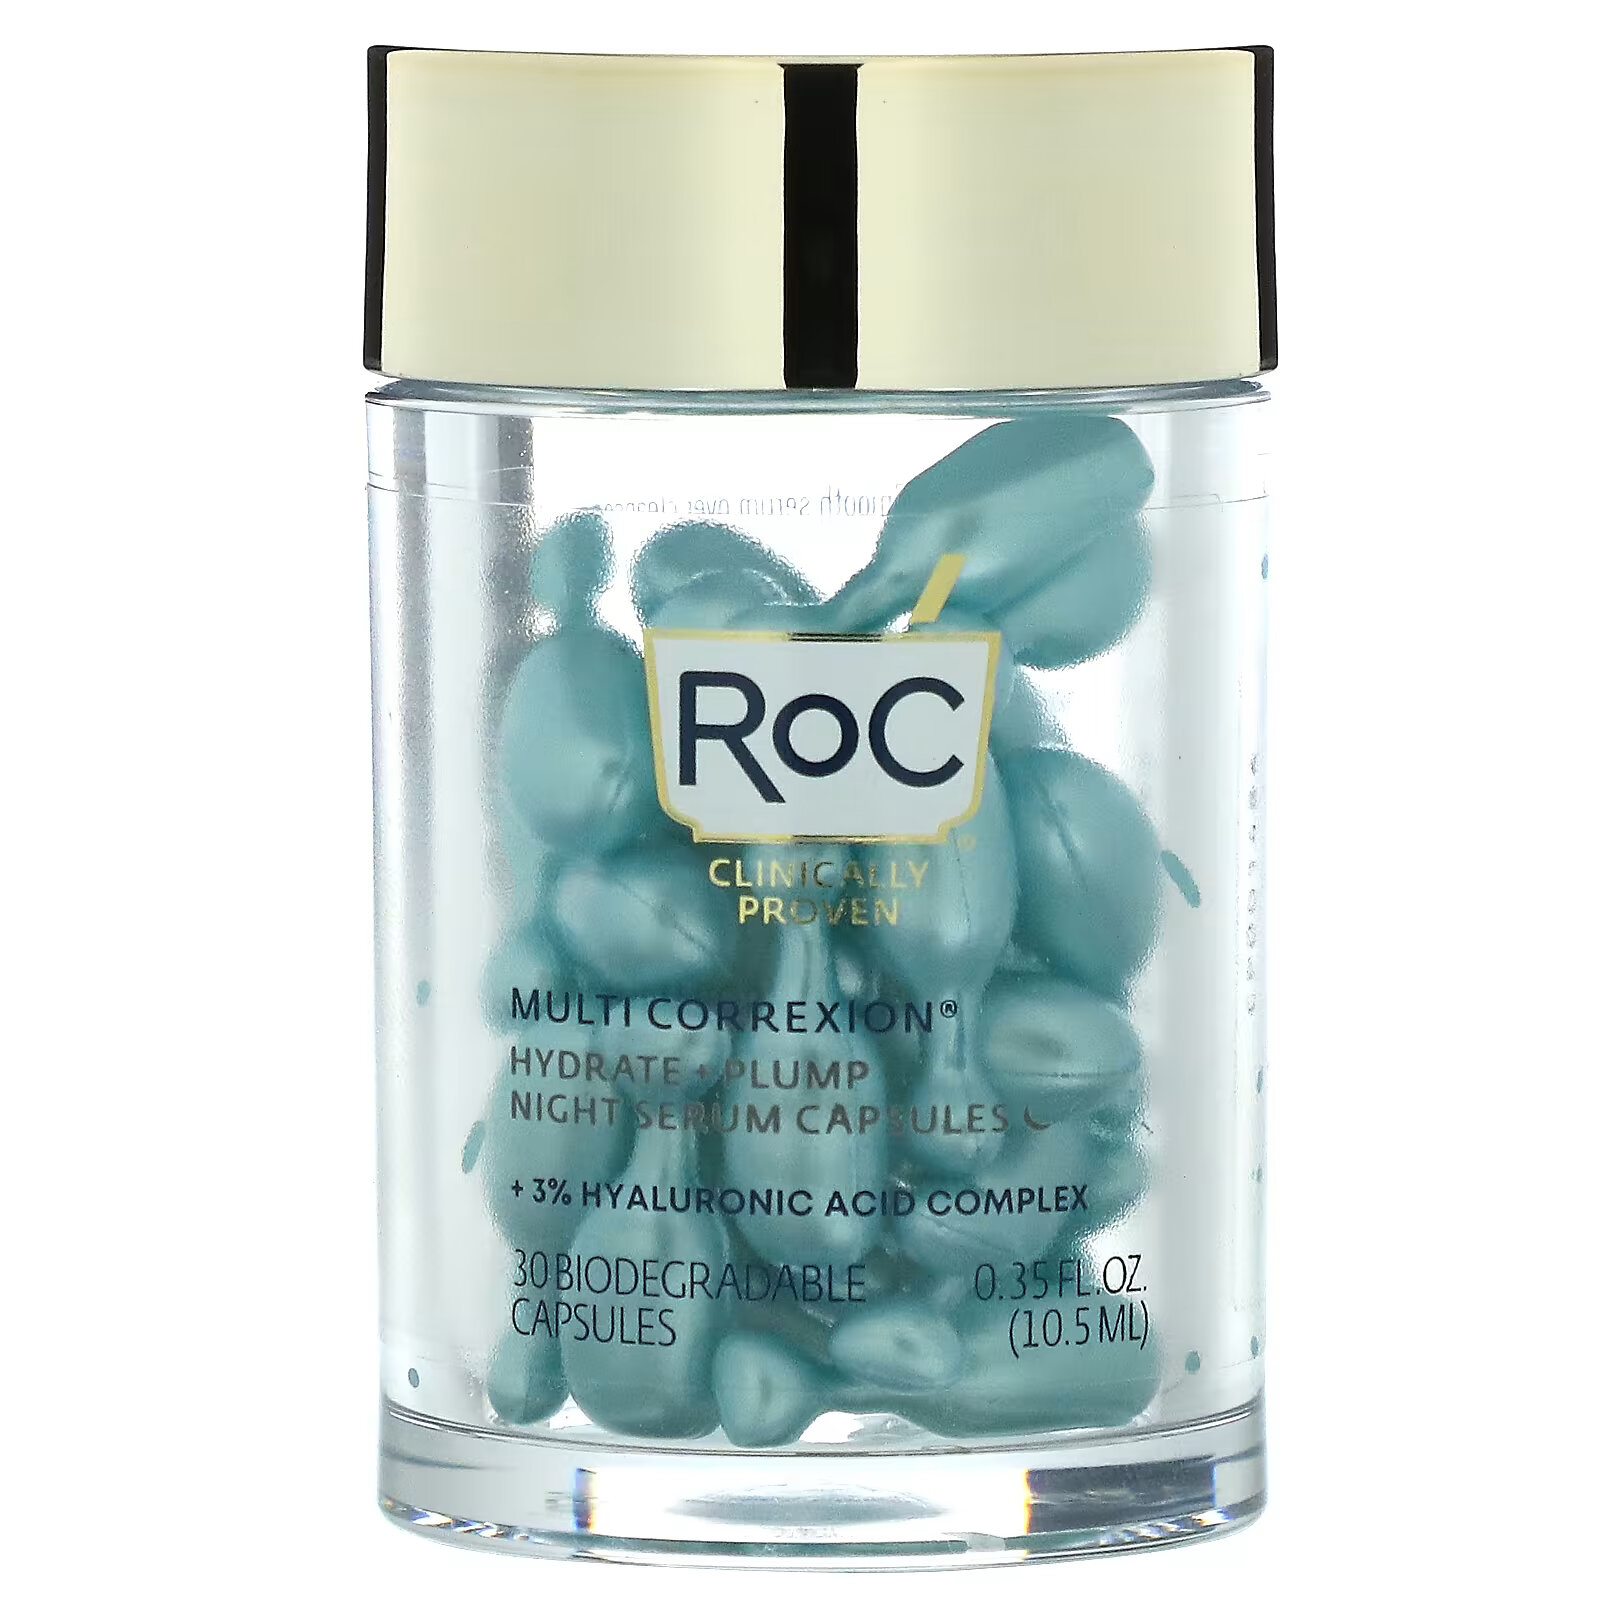 RoC, Multi Correxion, ночная сыворотка в капсулах, увлажнение и упругость, без аромата, 30 биоразлагаемых капсул сыворотка ночная roc retinol correxion line разглаживающая 30 биоразлагаемых капсул